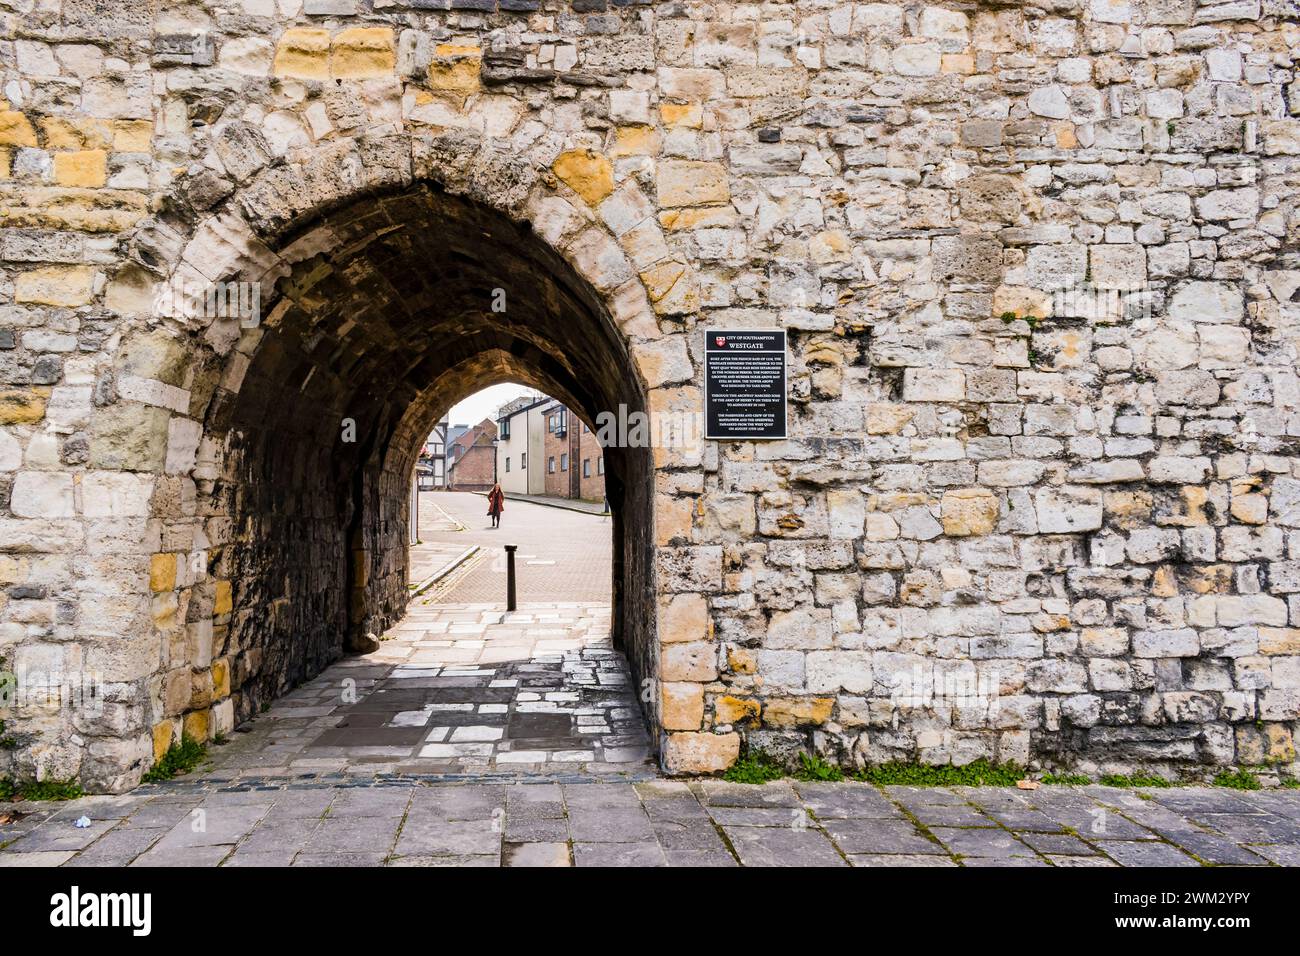 Westgate nelle mura della città vecchia, vista dall'esterno. Southampton, Hampshire, Inghilterra, Regno Unito, Regno Unito, Europa Foto Stock